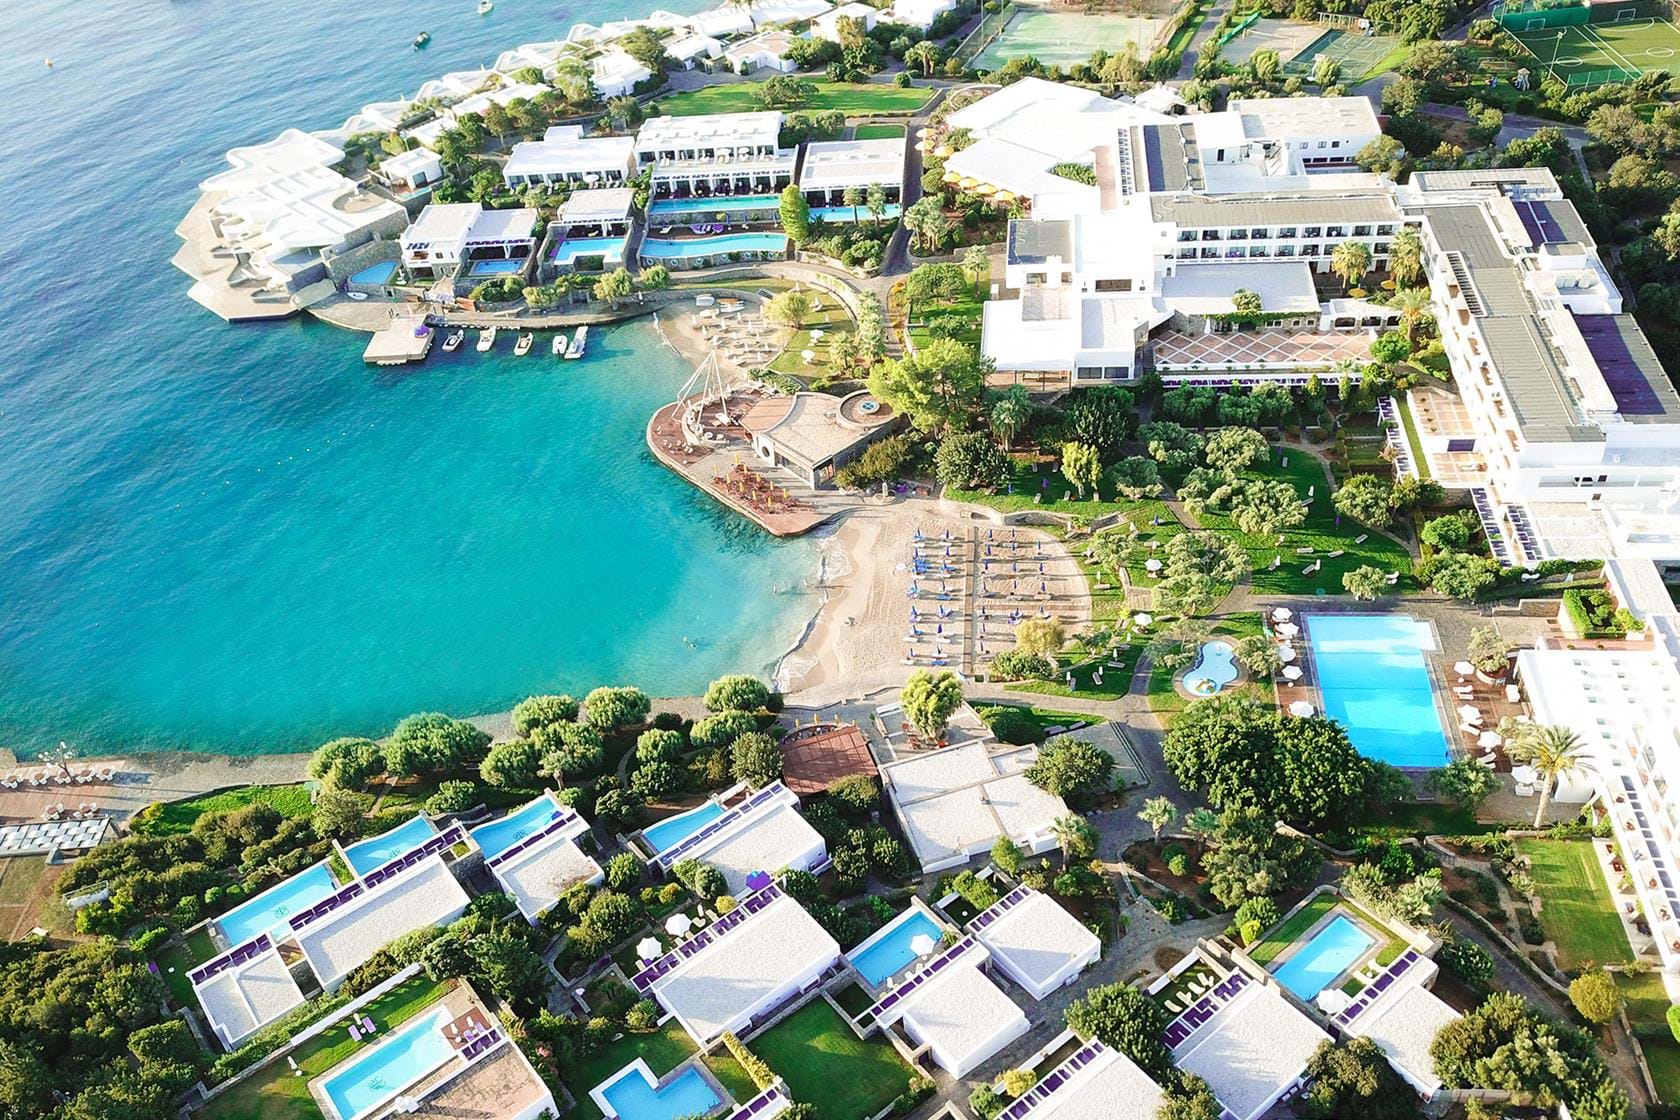 Vue panoramique avec les piscines privées de l'Hôtel Elounda Bay 5étoiles situé à Elounda proche d'Aghios Nicolaos en Crète